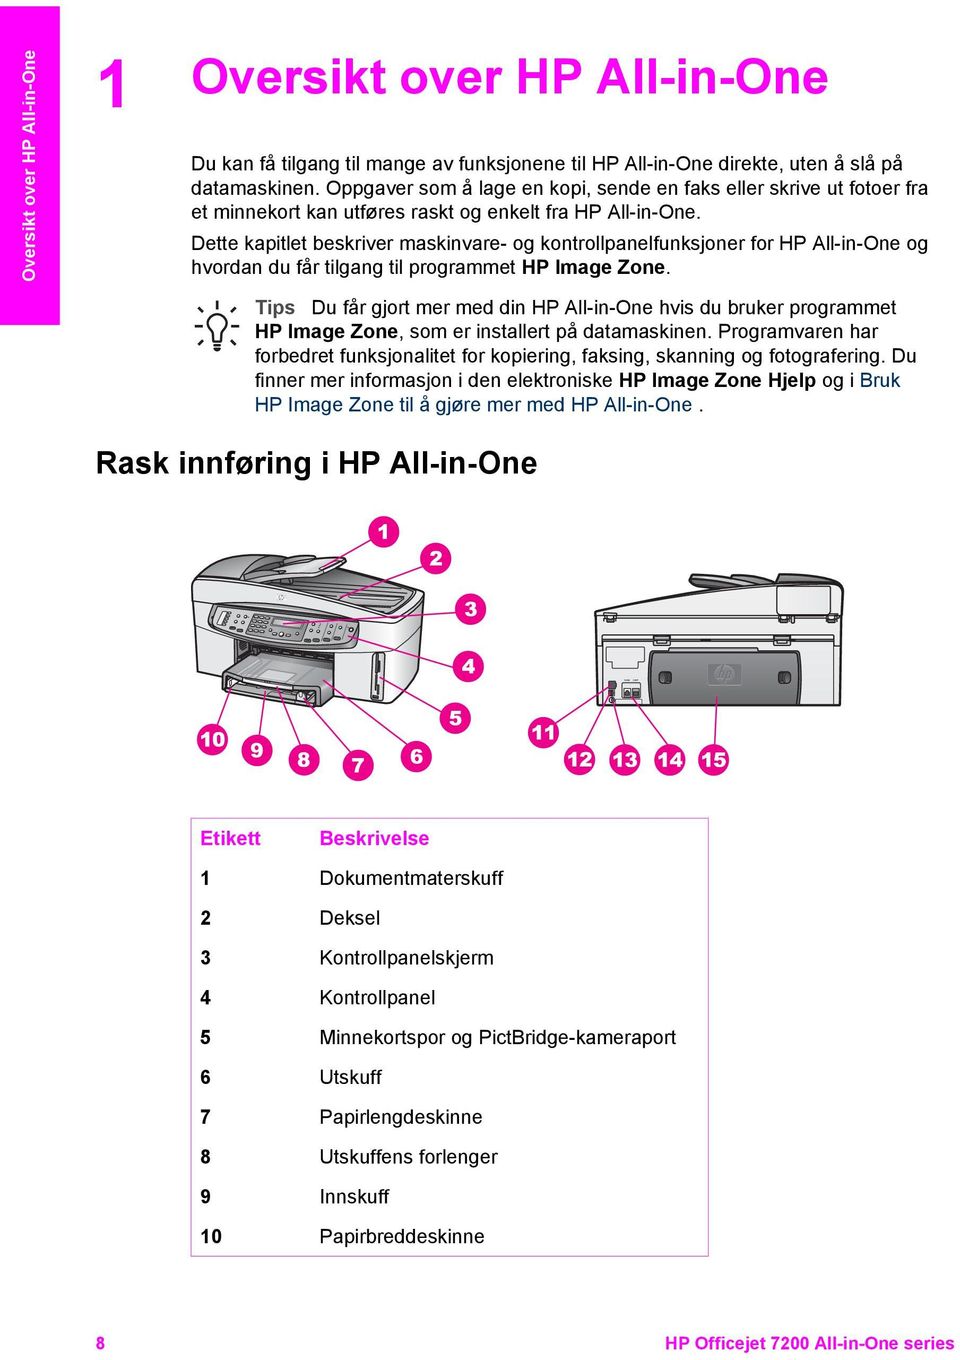 Dette kapitlet beskriver maskinvare- og kontrollpanelfunksjoner for HP All-in-One og hvordan du får tilgang til programmet HP Image Zone.